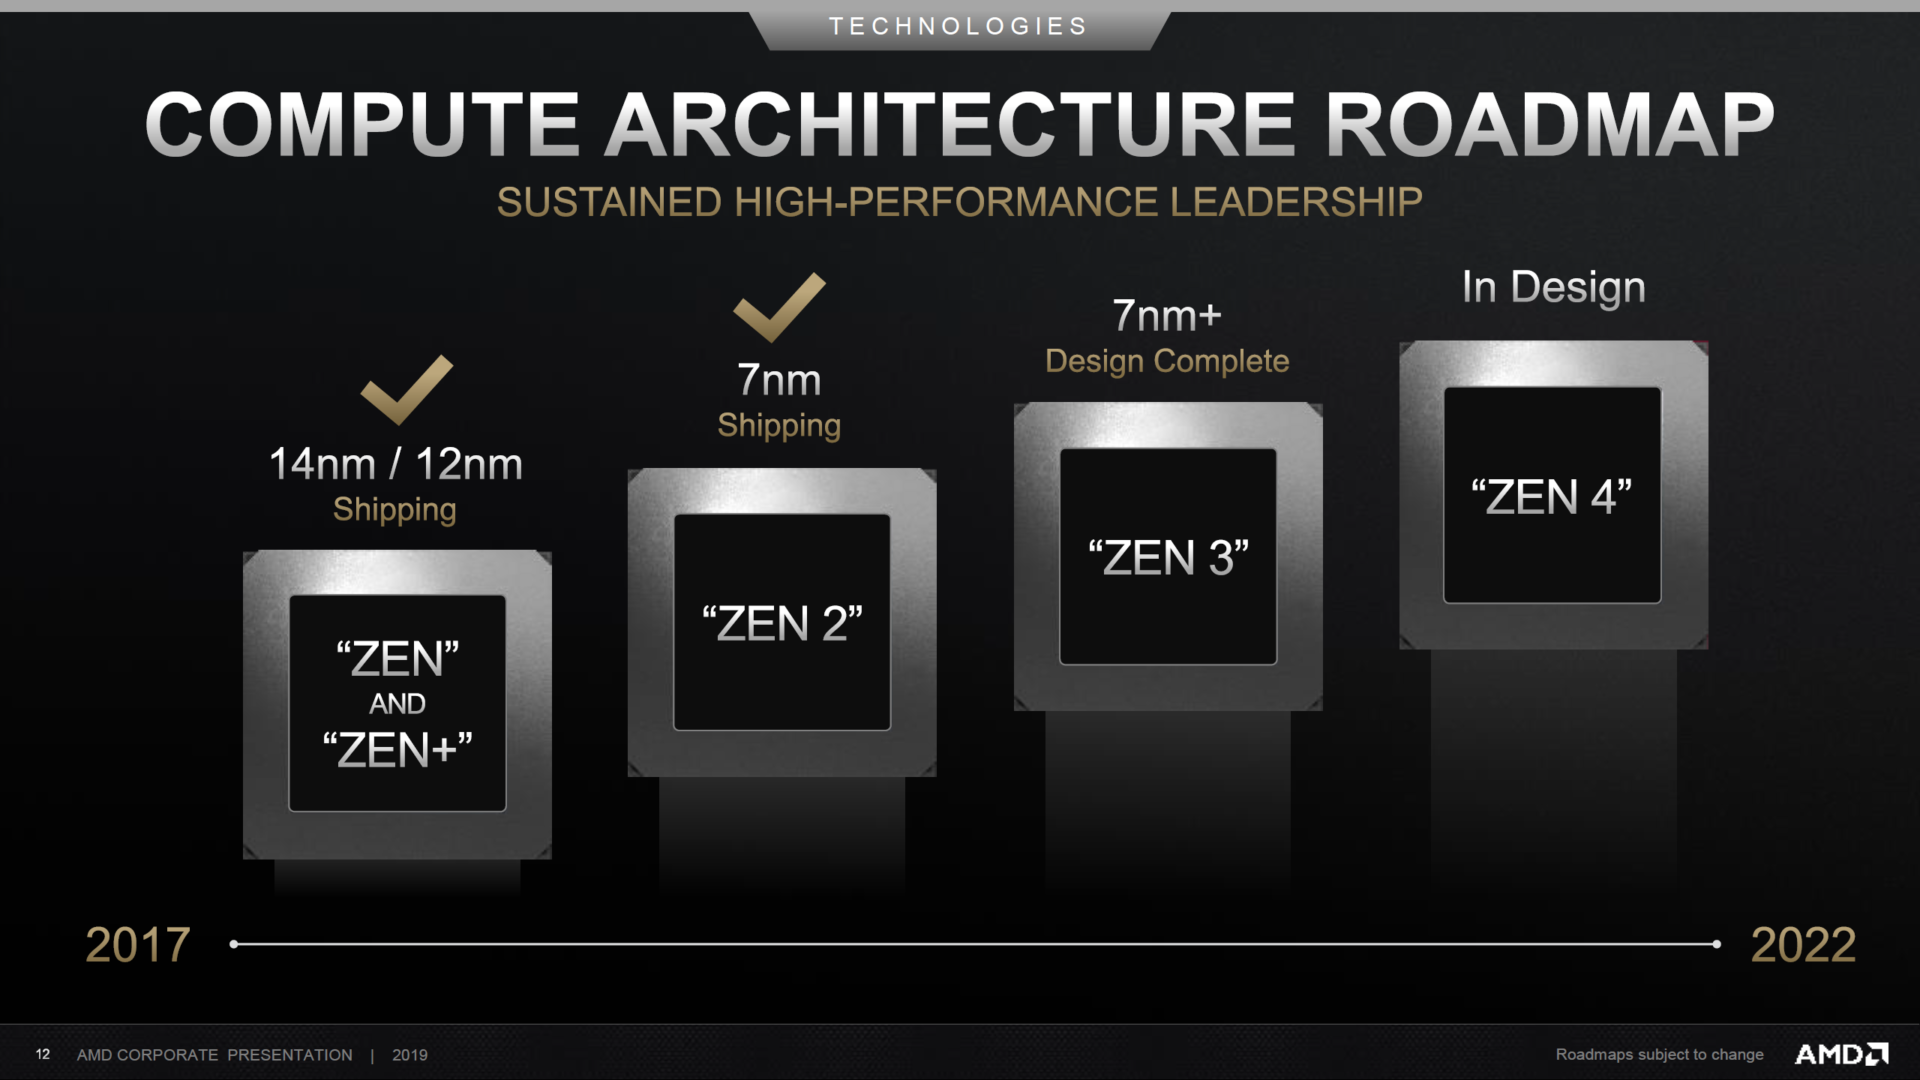 amd zen roadmap 1920x10801 ลือ!! AMD อาจเผยข้อมูลซีพียู Ryzen 4000 สถาปัตย์ ZEN3 และซีพียู EYPC รุ่นใหม่ล่าสุดในงาน CES 2020 ที่จะถึงนี้ 